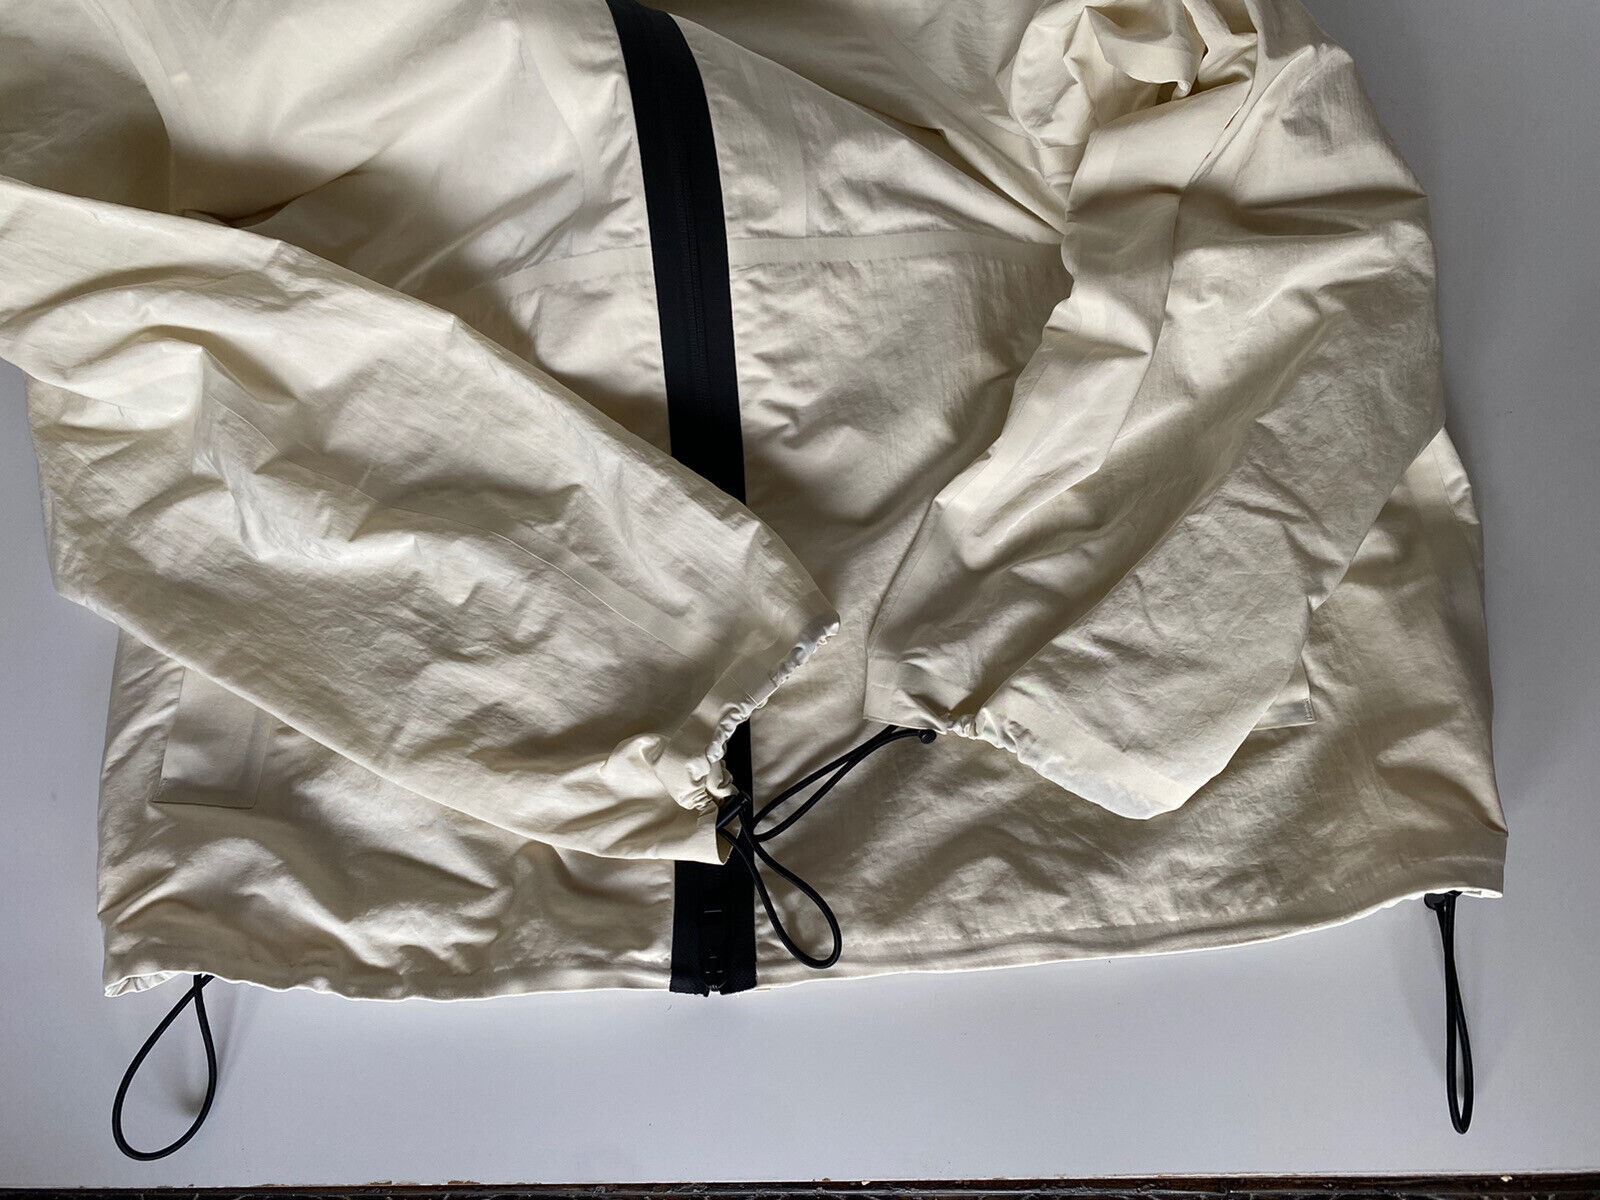 СЗТ 1850 долларов США Bottega Veneta Мужская куртка из мелового технического нейлона с капюшоном 40 США